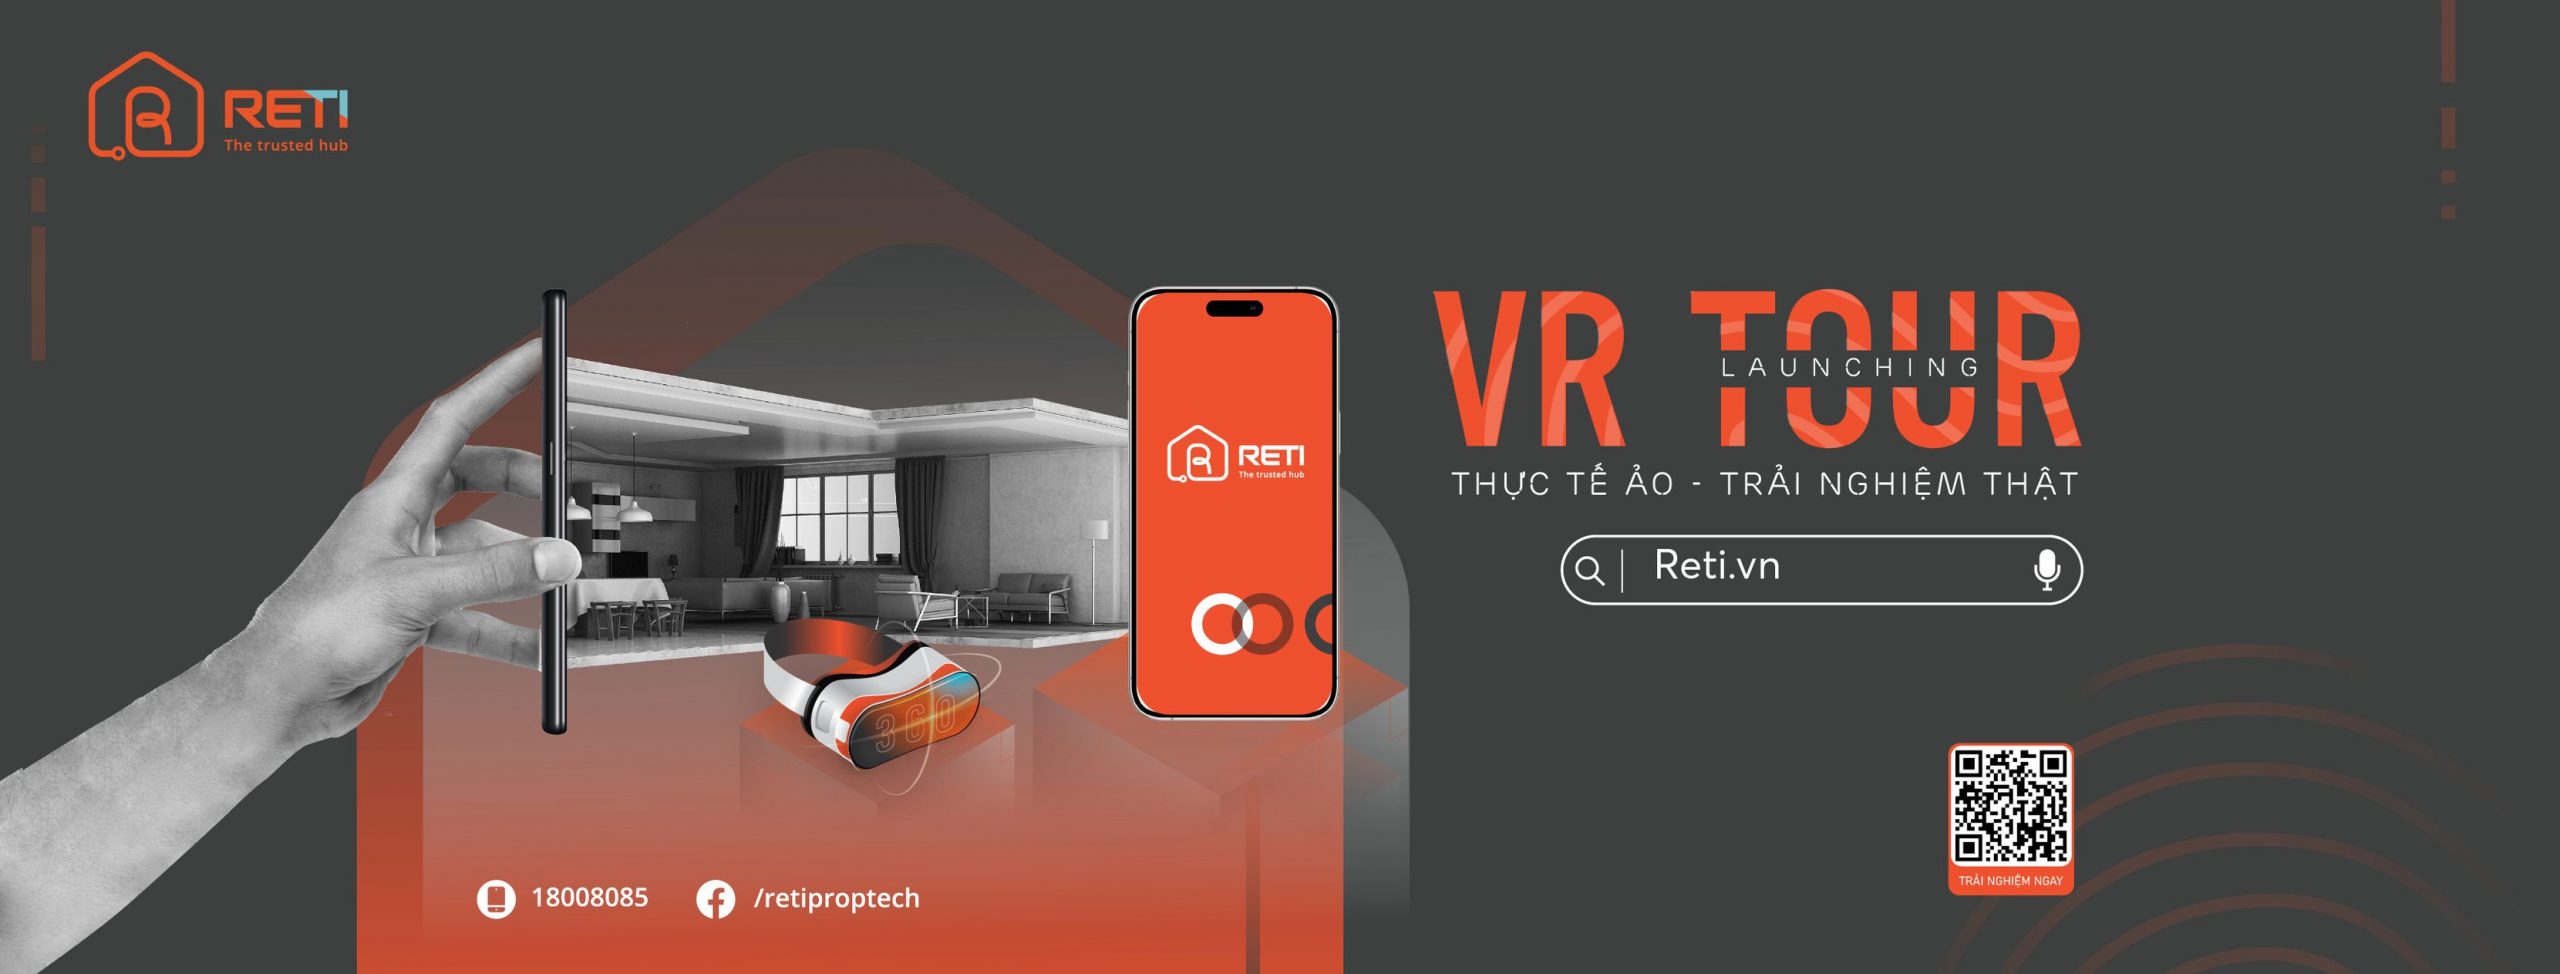 Trải nghiệm dịch vụ VR 360 tại reti.vn có gì đặc biệt? 1